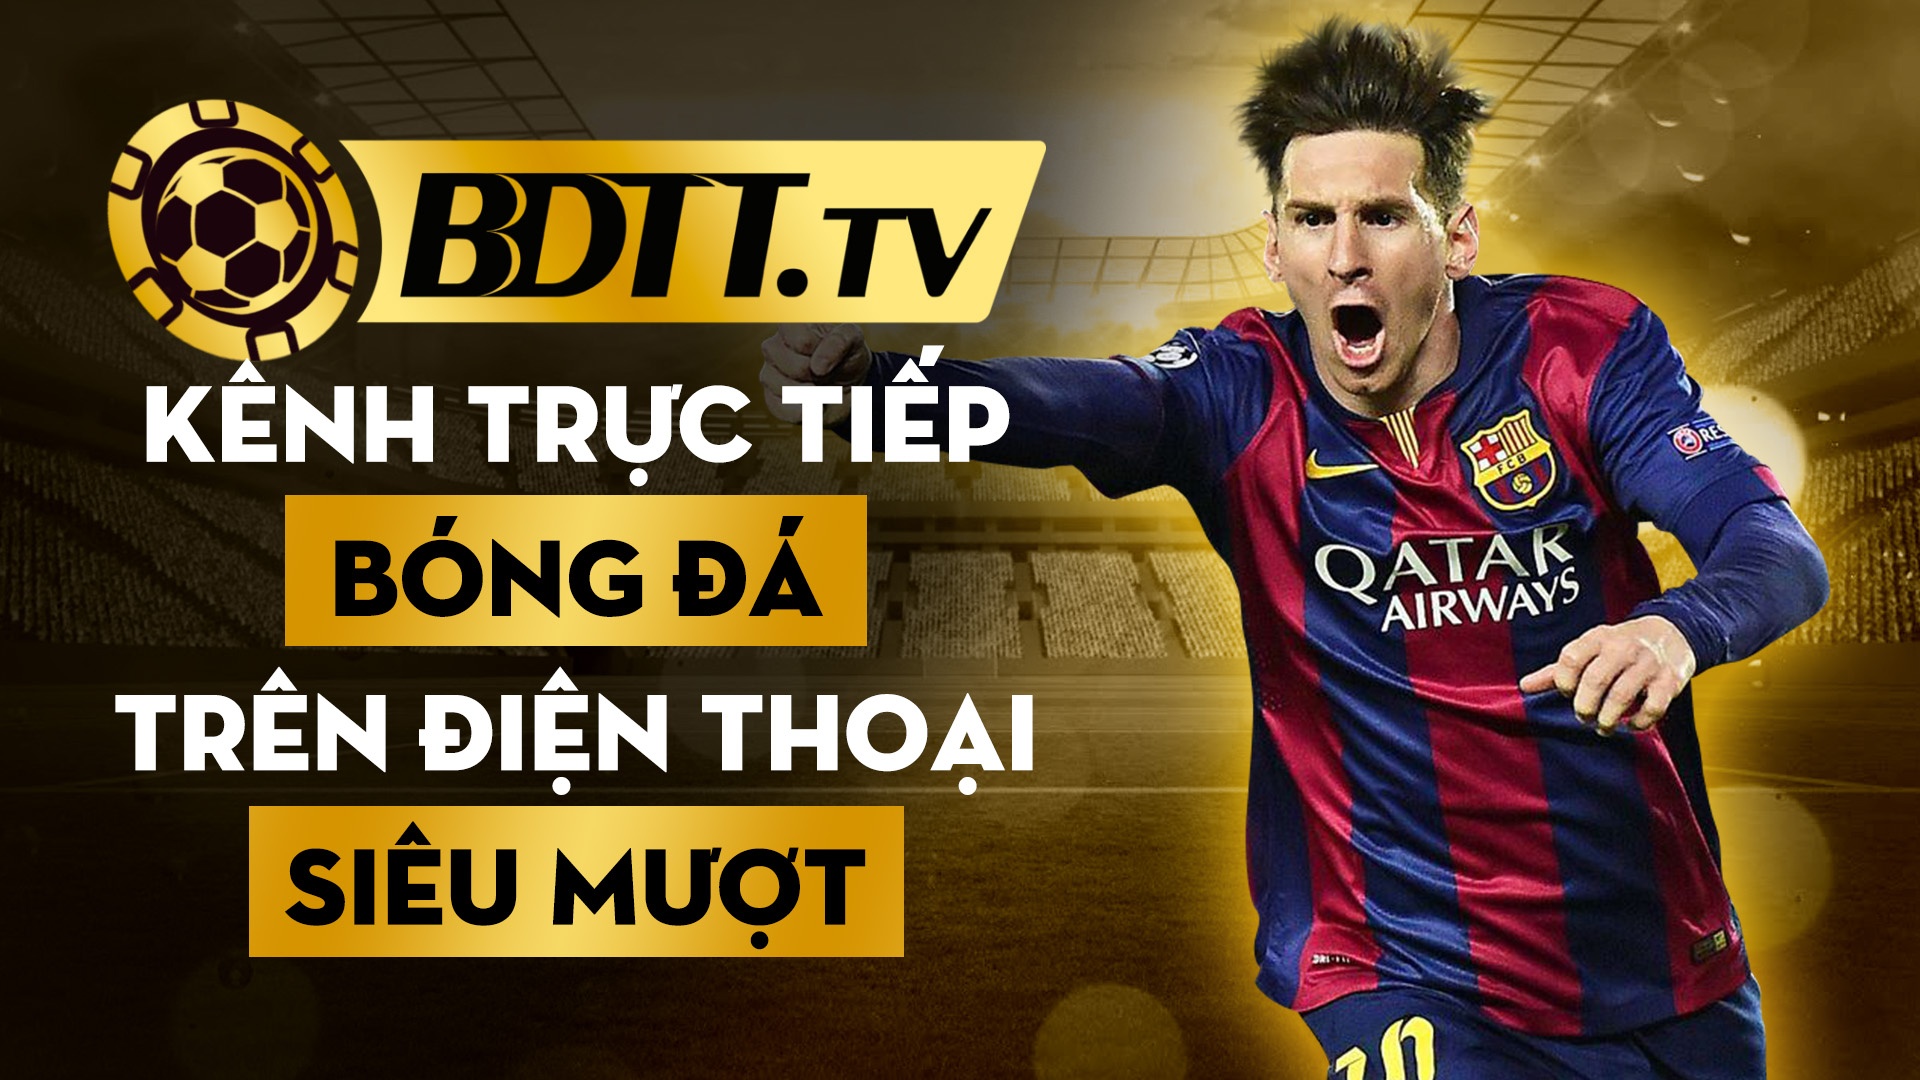 BDTT.tv kênh trực tiếp bóng đá trên điện thoại siêu mượt